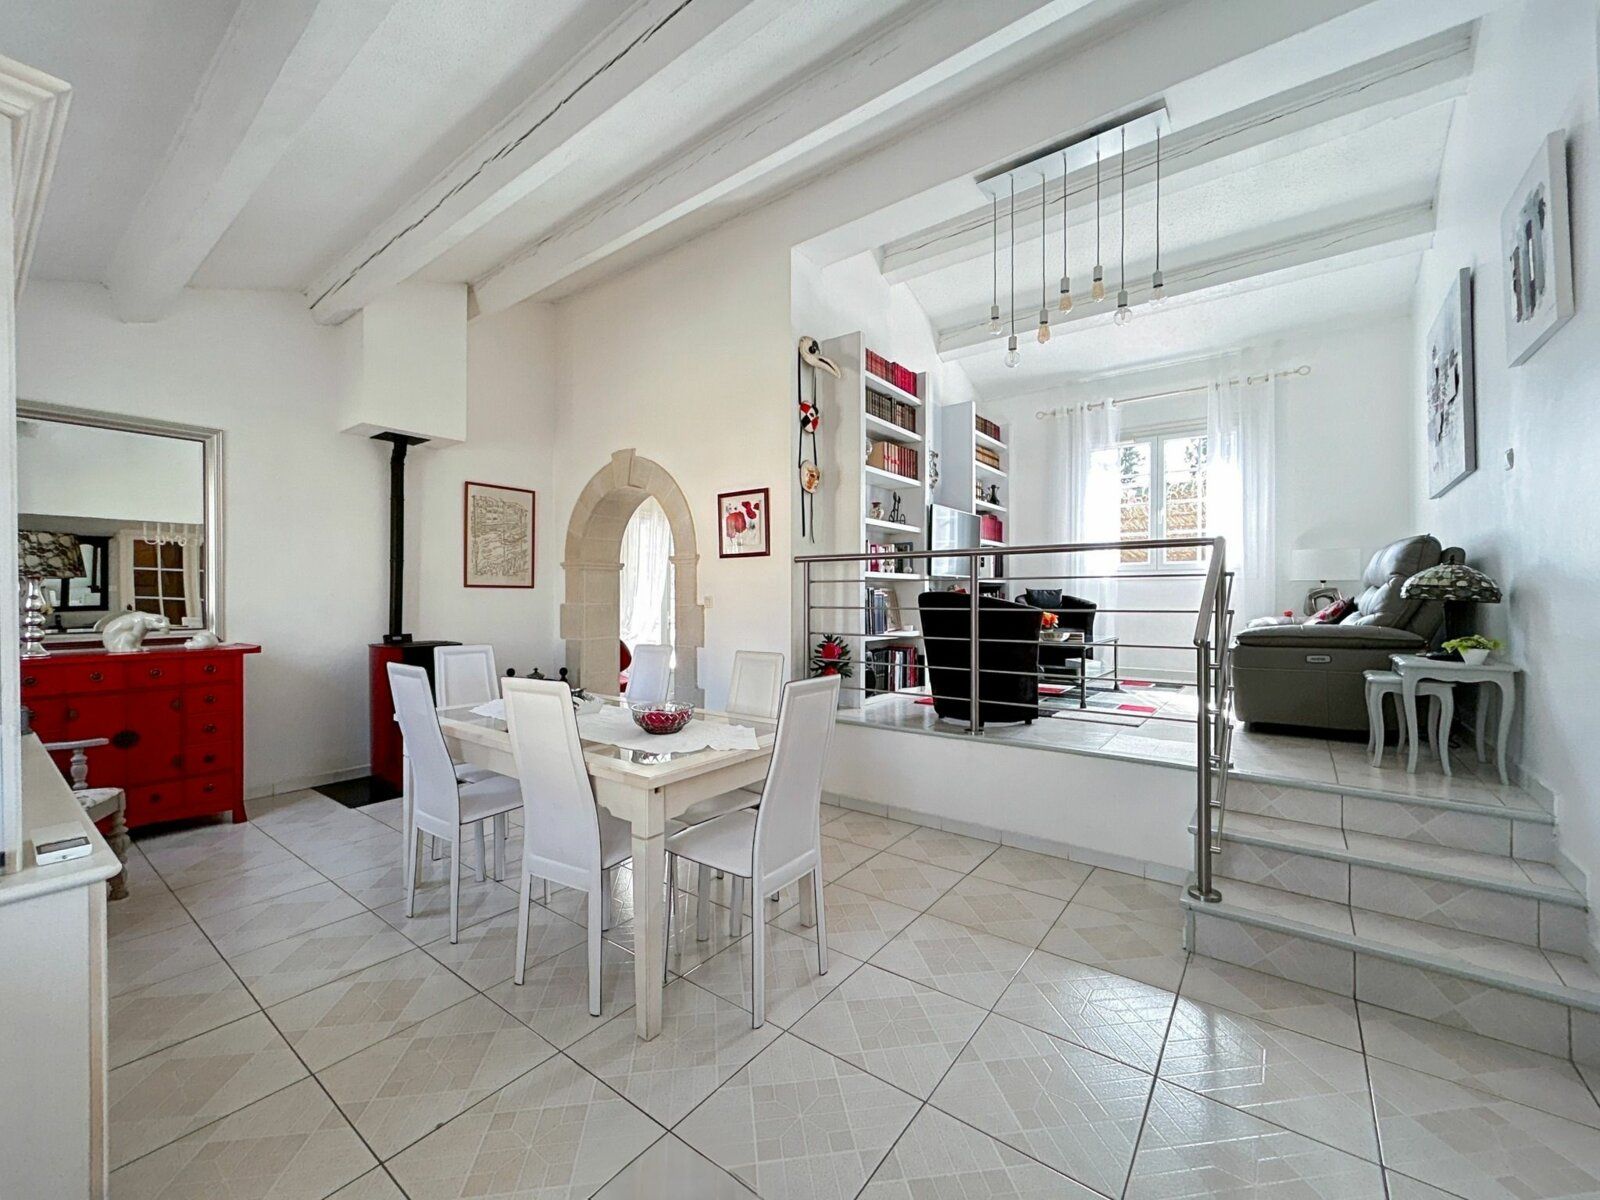 Maison à vendre 4 141m2 à Lieuran-lès-Béziers vignette-6